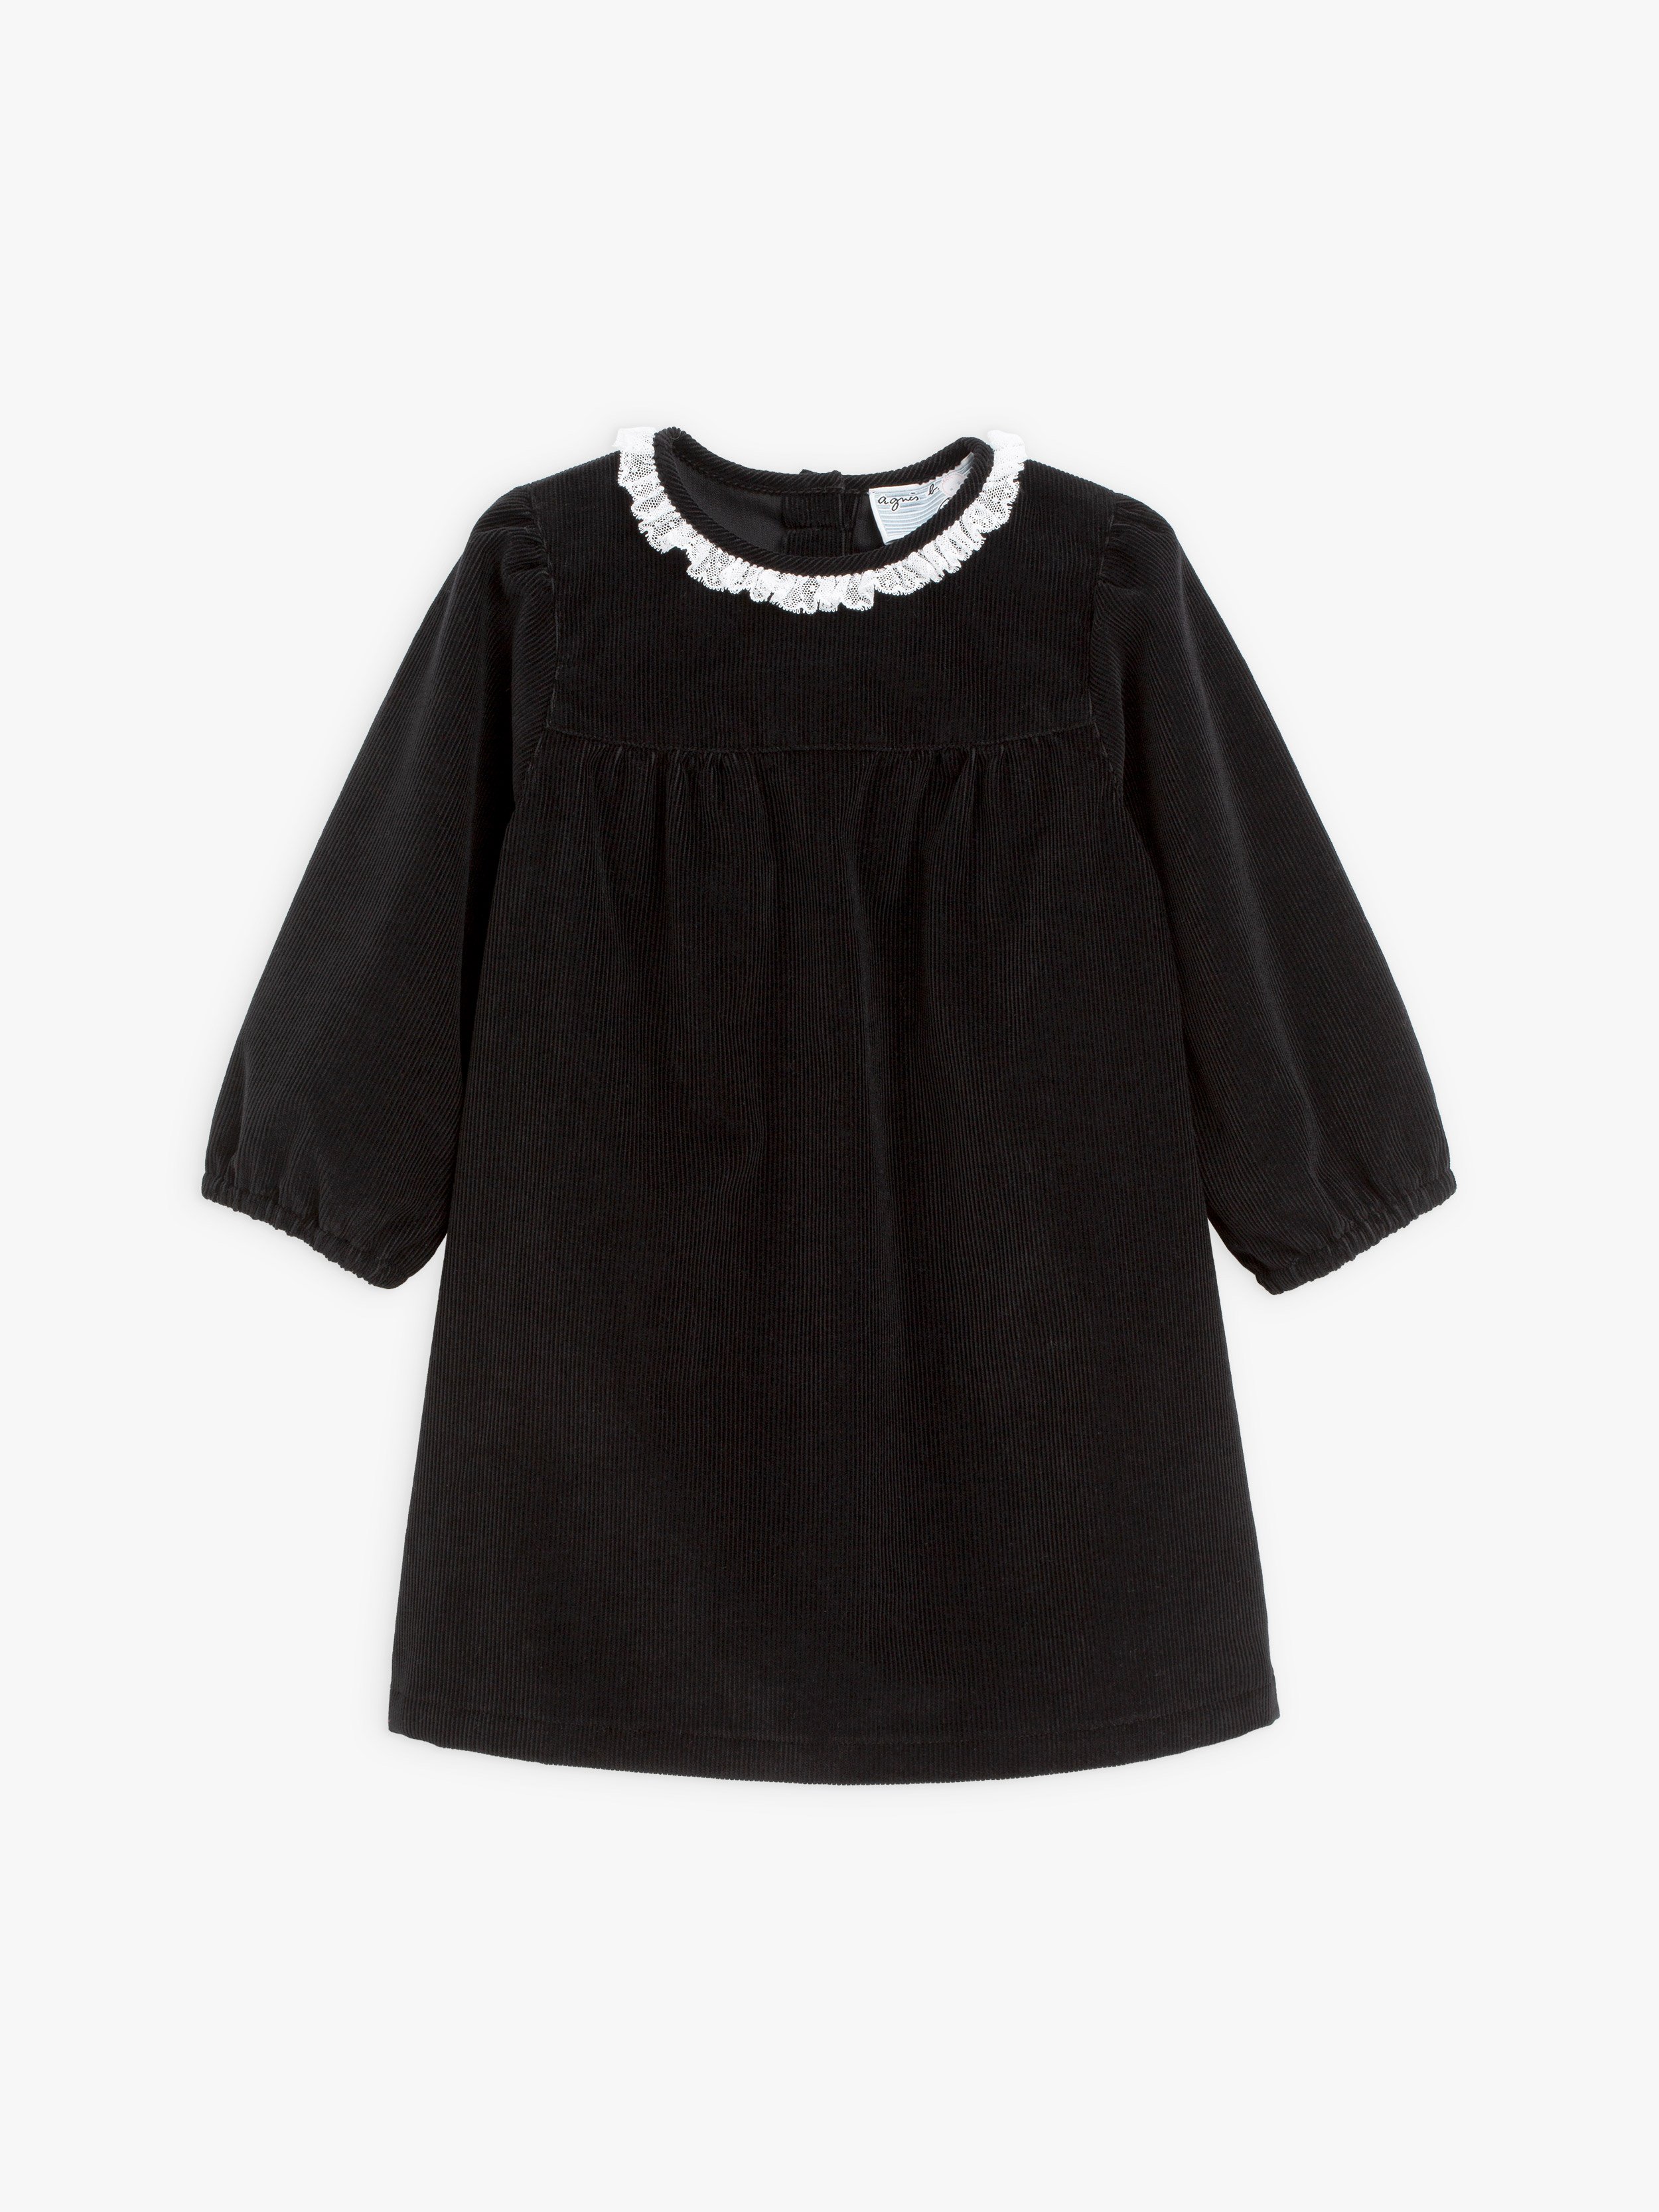 Cassy black corduroy dress with lace detail | agnès b.